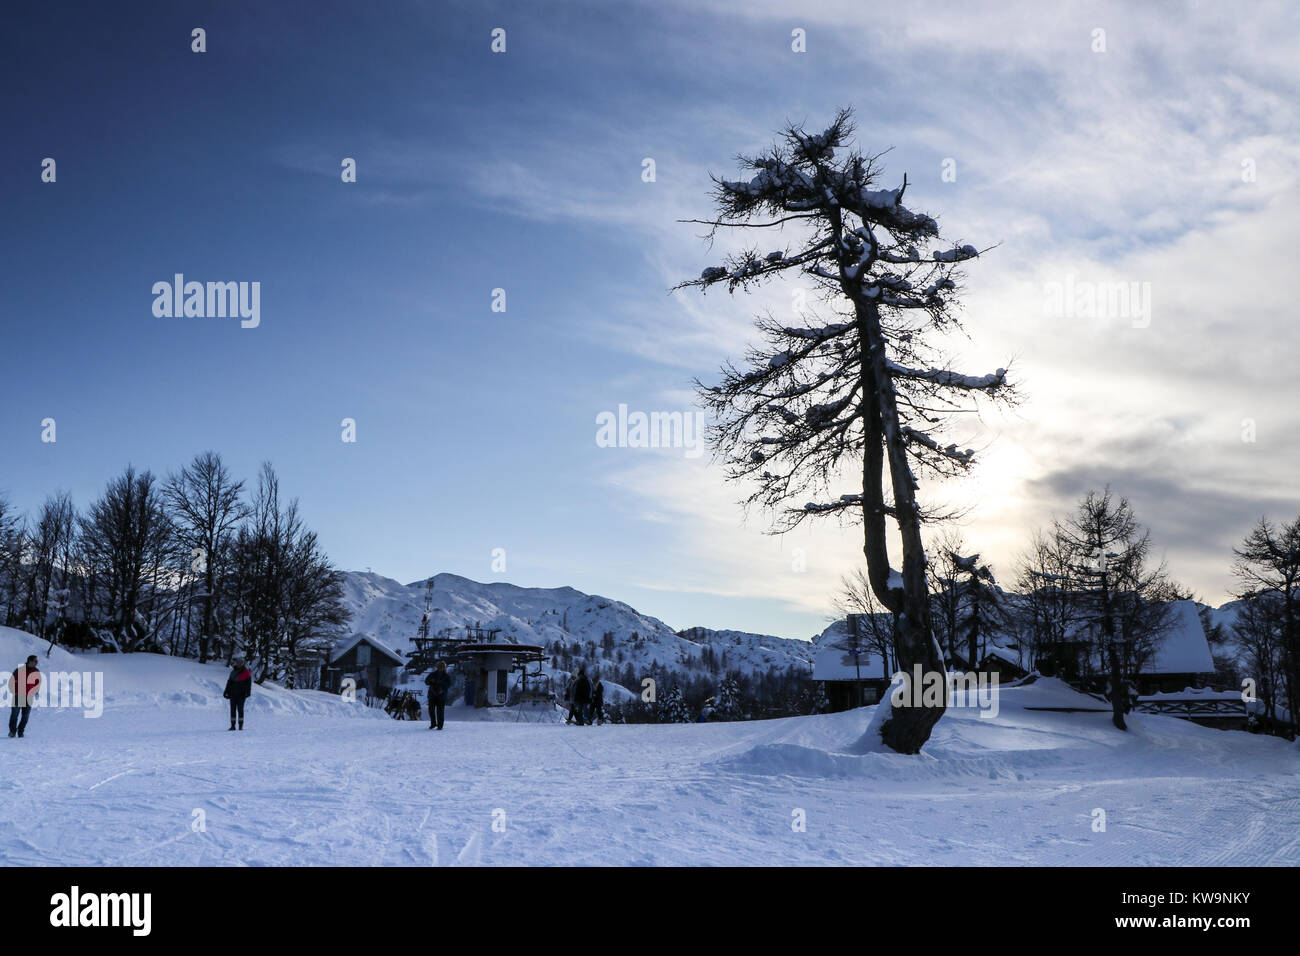 L'étonnante sérénité de Vogel Ski Resort, Slovénie, est capturée dans cette image merveilleuse, parfaite pour orner le front d'une carte de Noël ou une carte postale. Banque D'Images